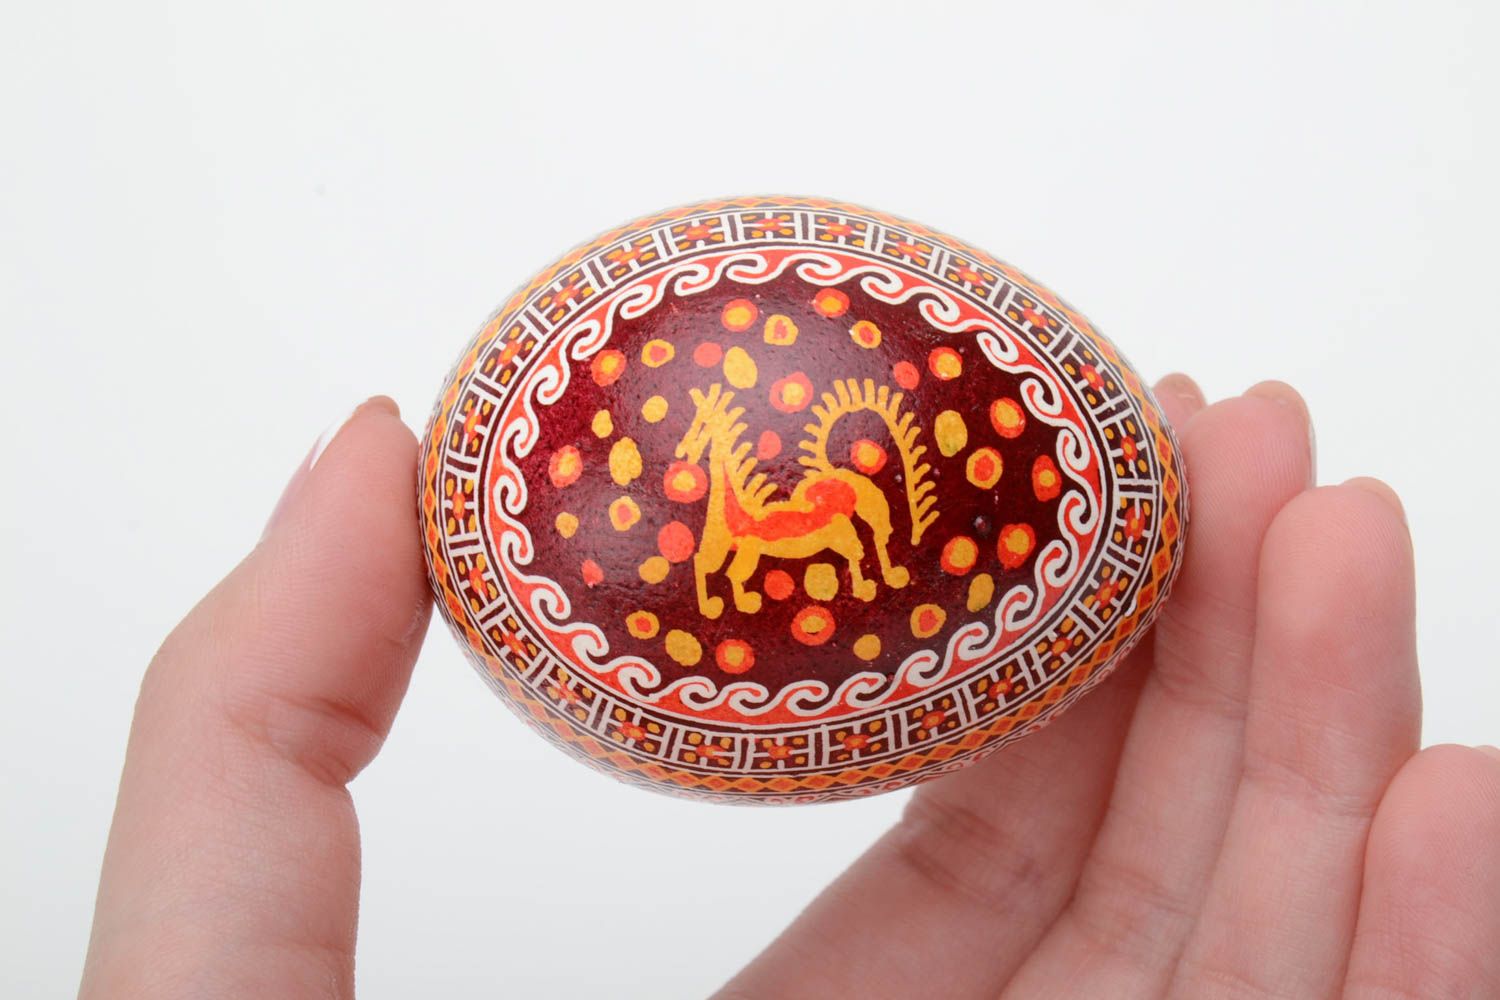 Расписное пасхальное яйцо писанка с изображением коня сувенир ручная работа в восковой технике фото 5